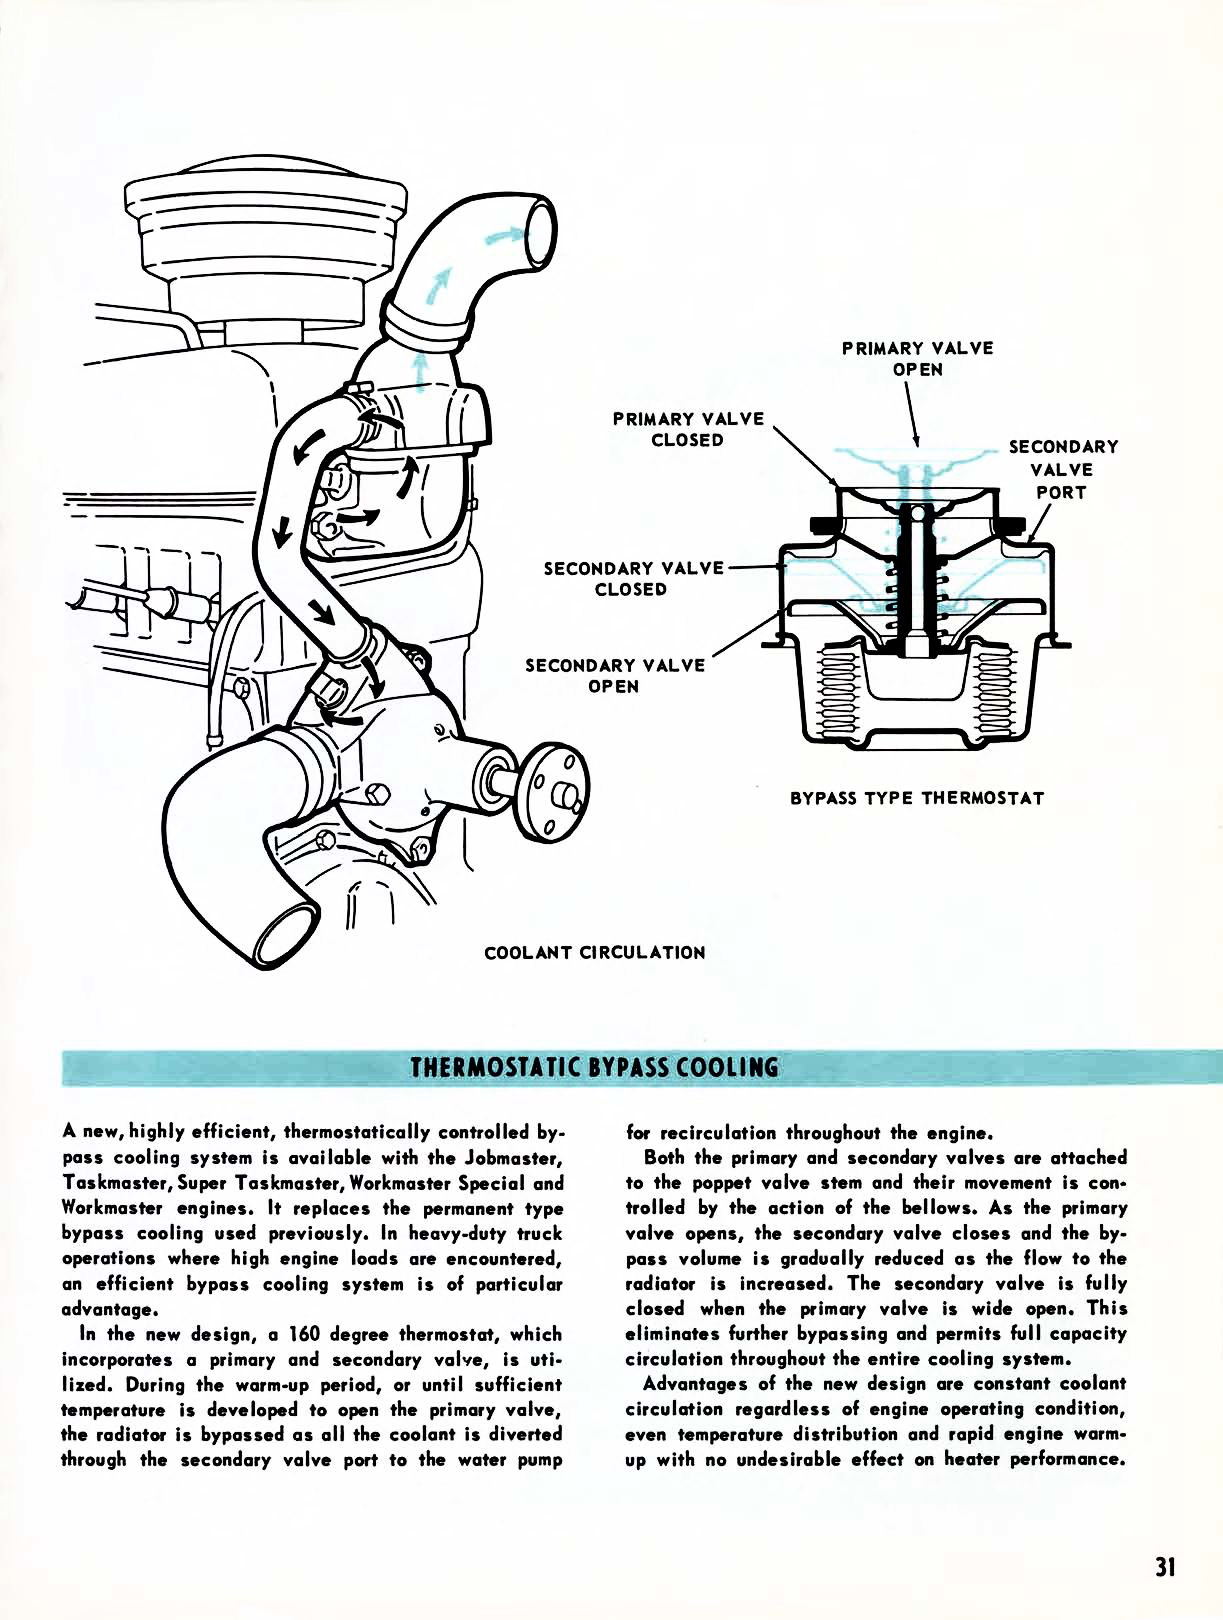 1959 Chevrolet Truck Engineering Features-31